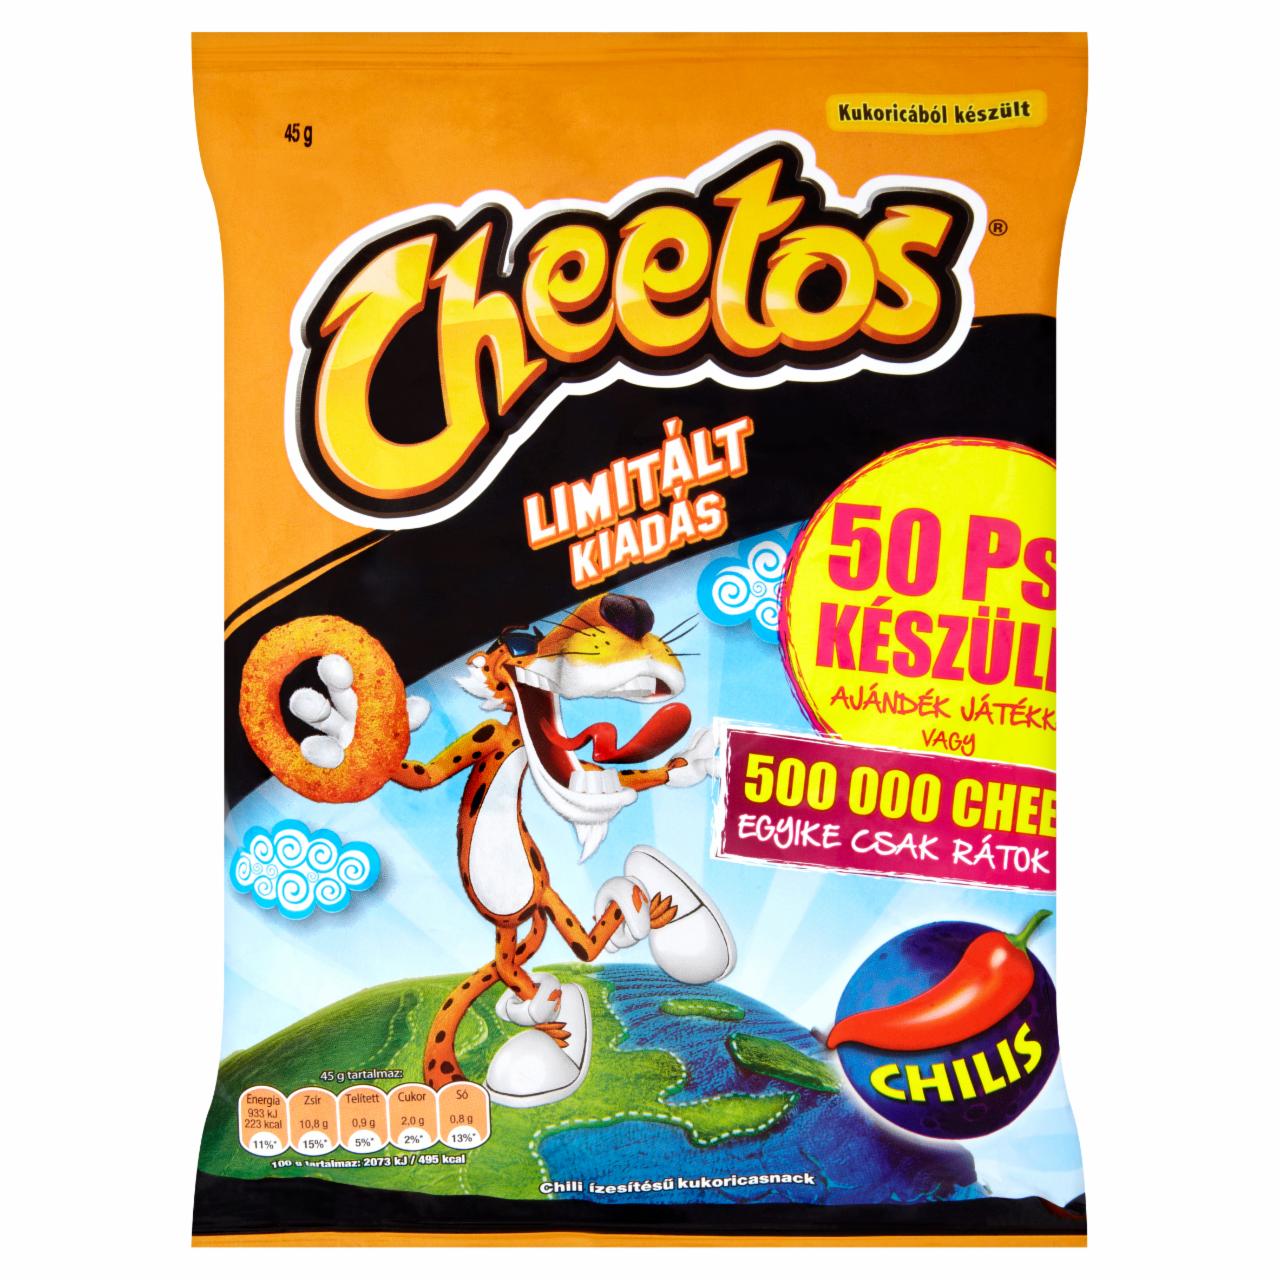 Képek - Cheetos chili ízesítésű kukoricasnack 45 g